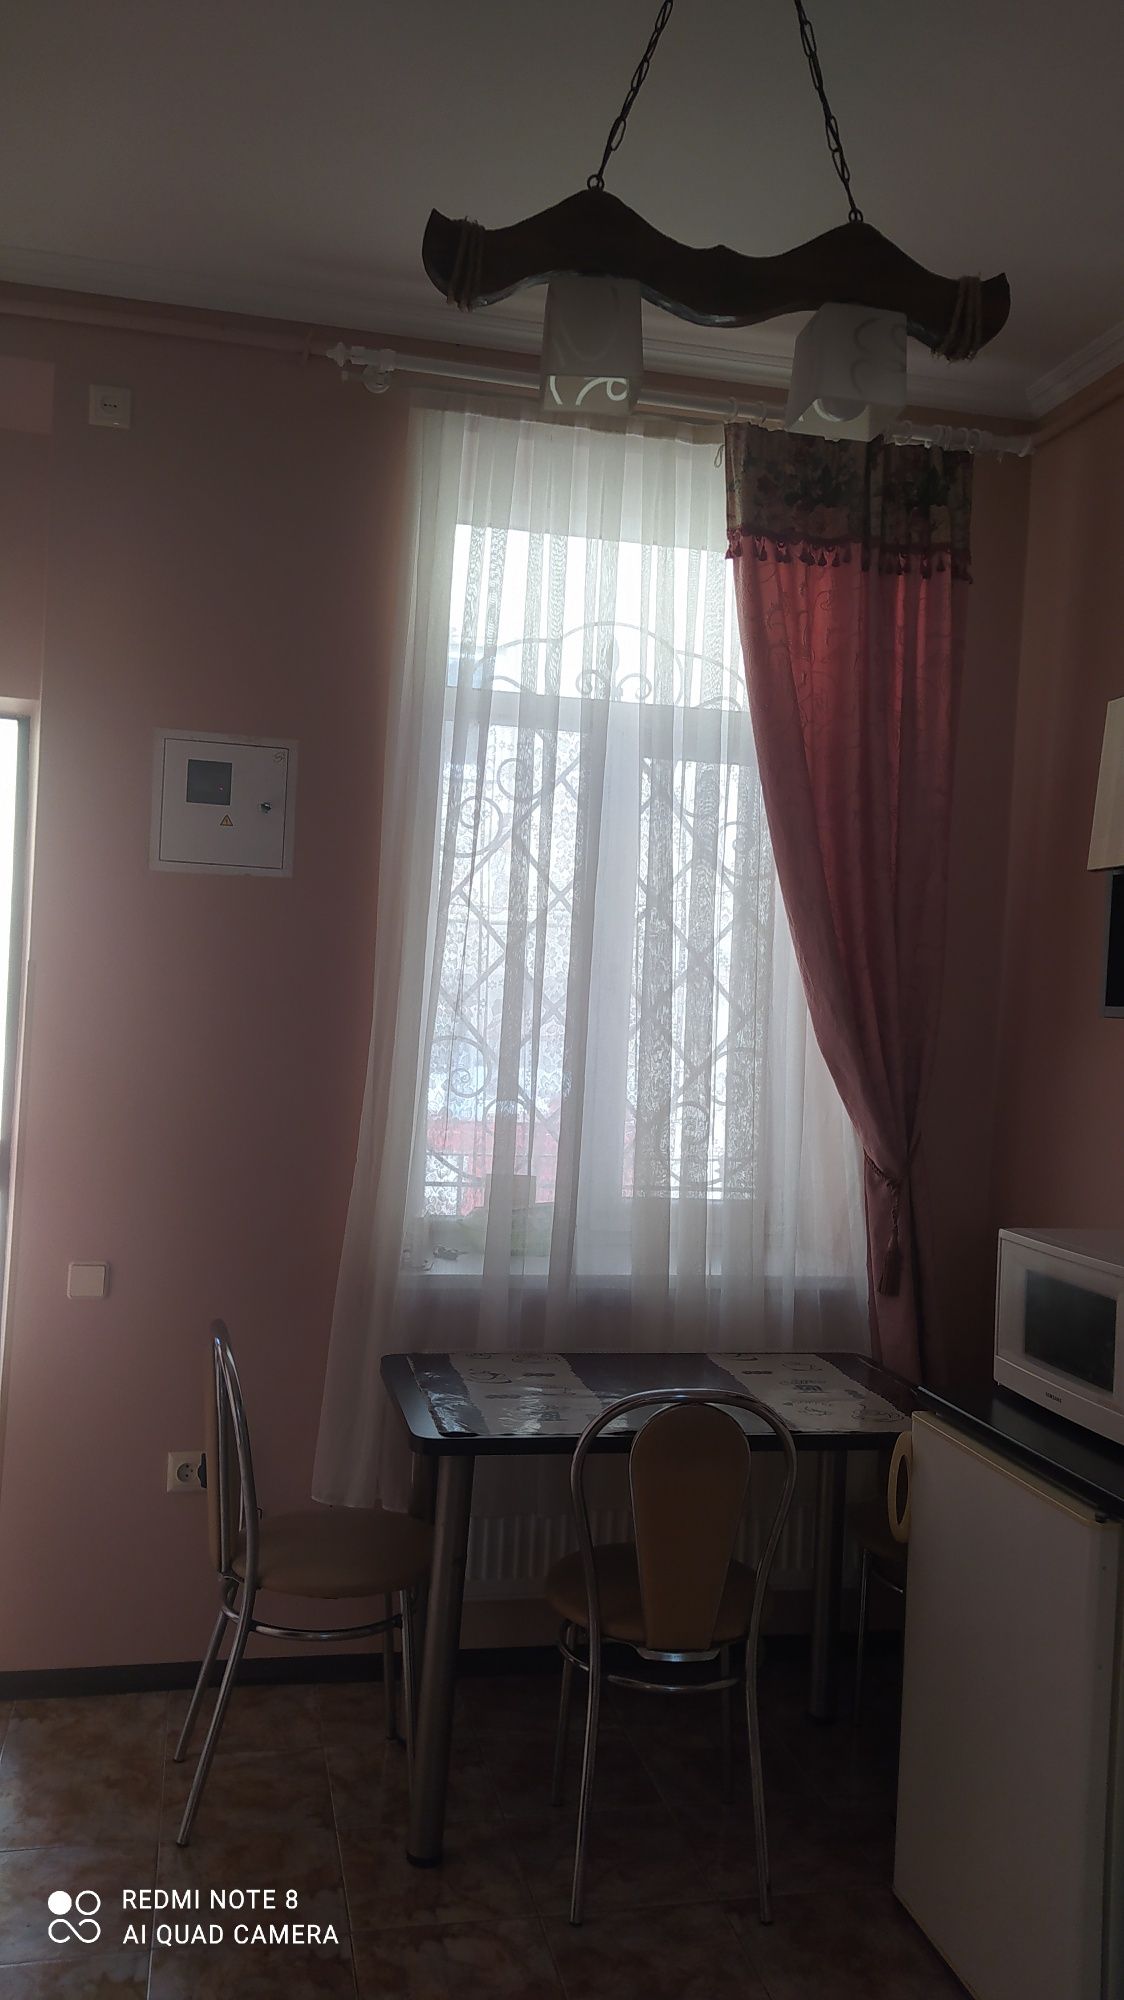 Посуточная, понедельная аренда квартиры во Львове от владельца